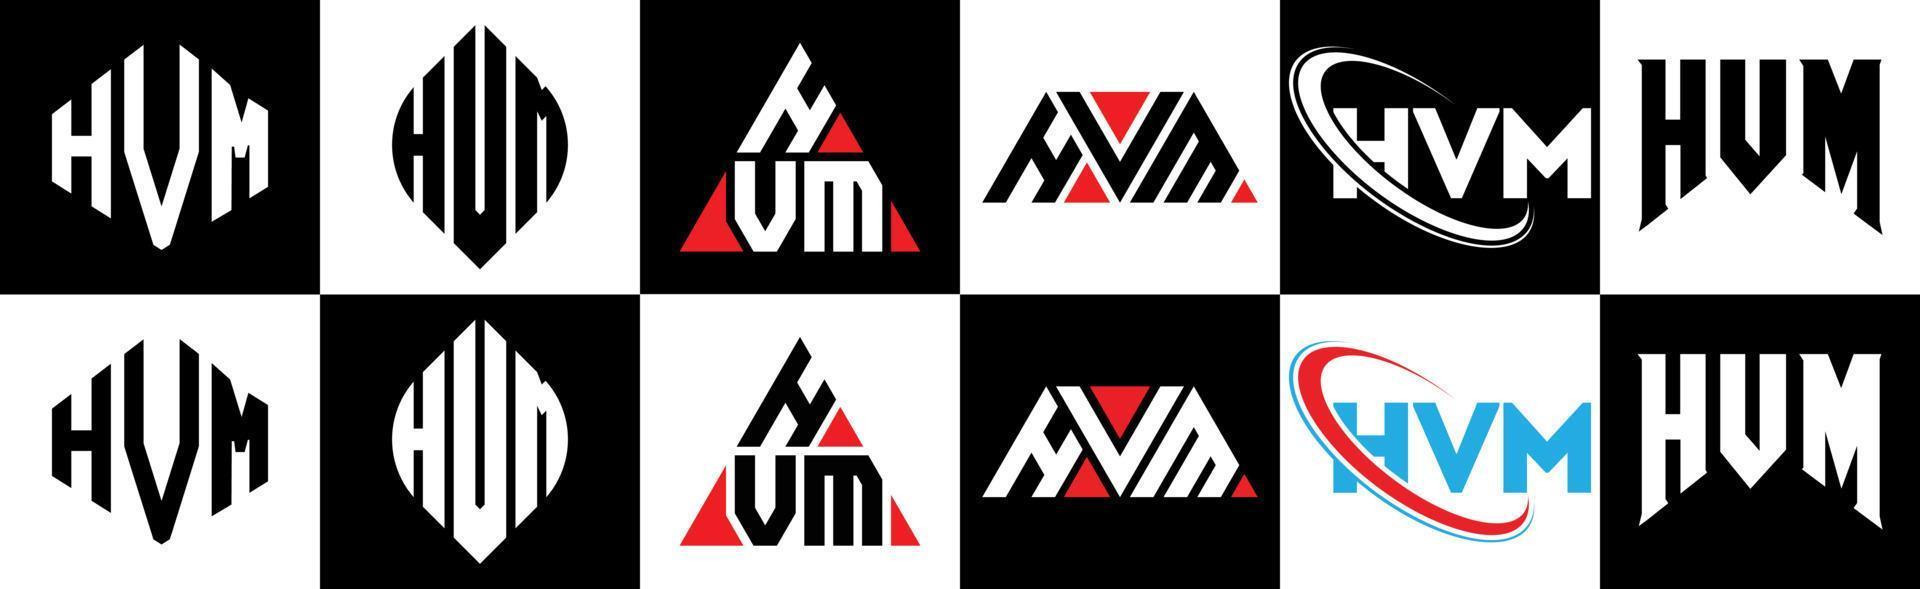 création de logo de lettre hvm en six styles. hvm polygone, cercle, triangle, hexagone, style plat et simple avec logo de lettre de variation de couleur noir et blanc dans un plan de travail. logo hvm minimaliste et classique vecteur